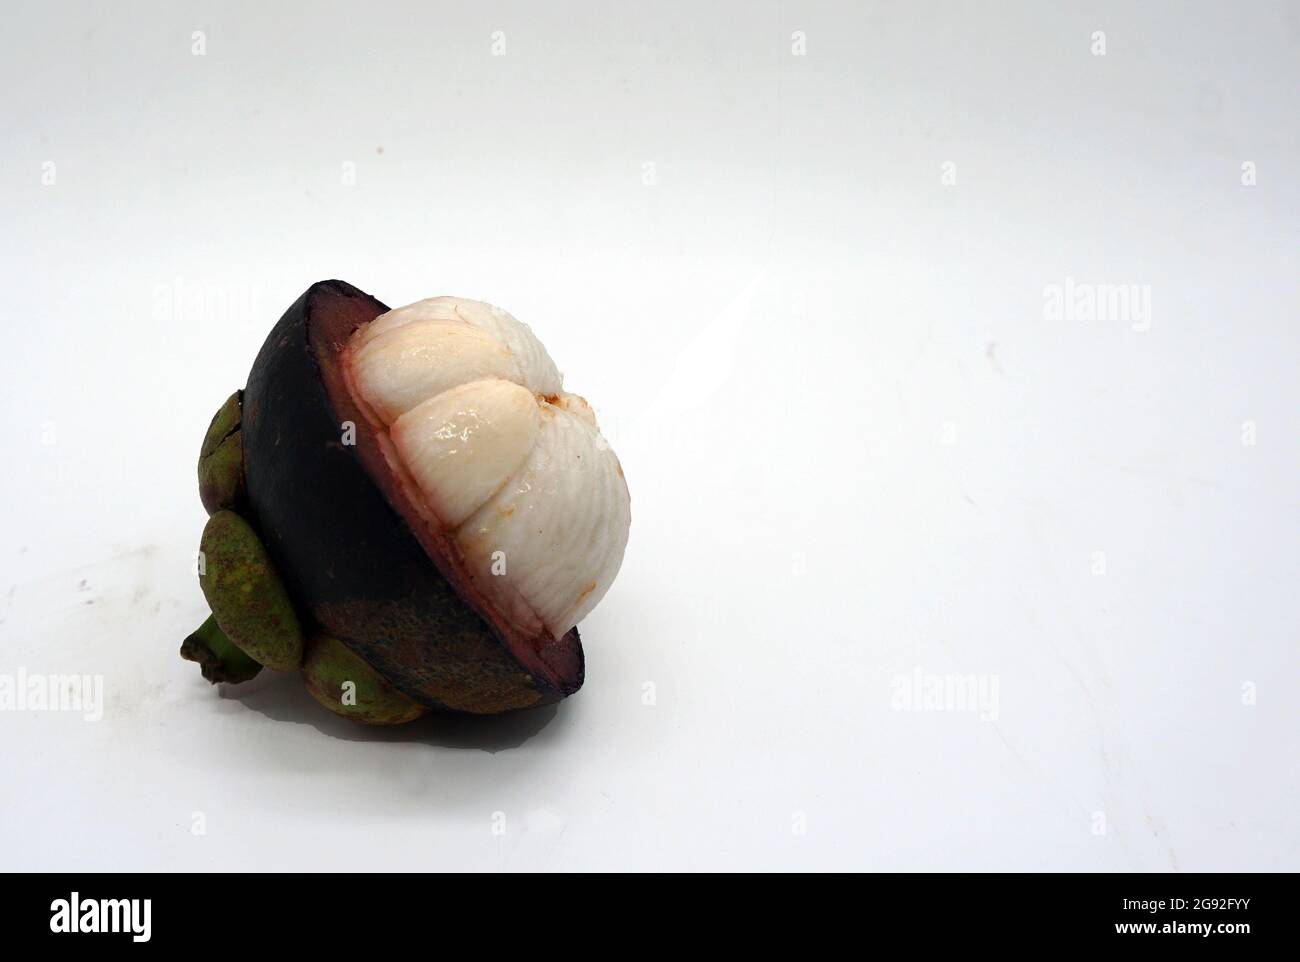 Le mangoustan, prêt à manger, est un fruit qui est bénéfique pour la santé Banque D'Images